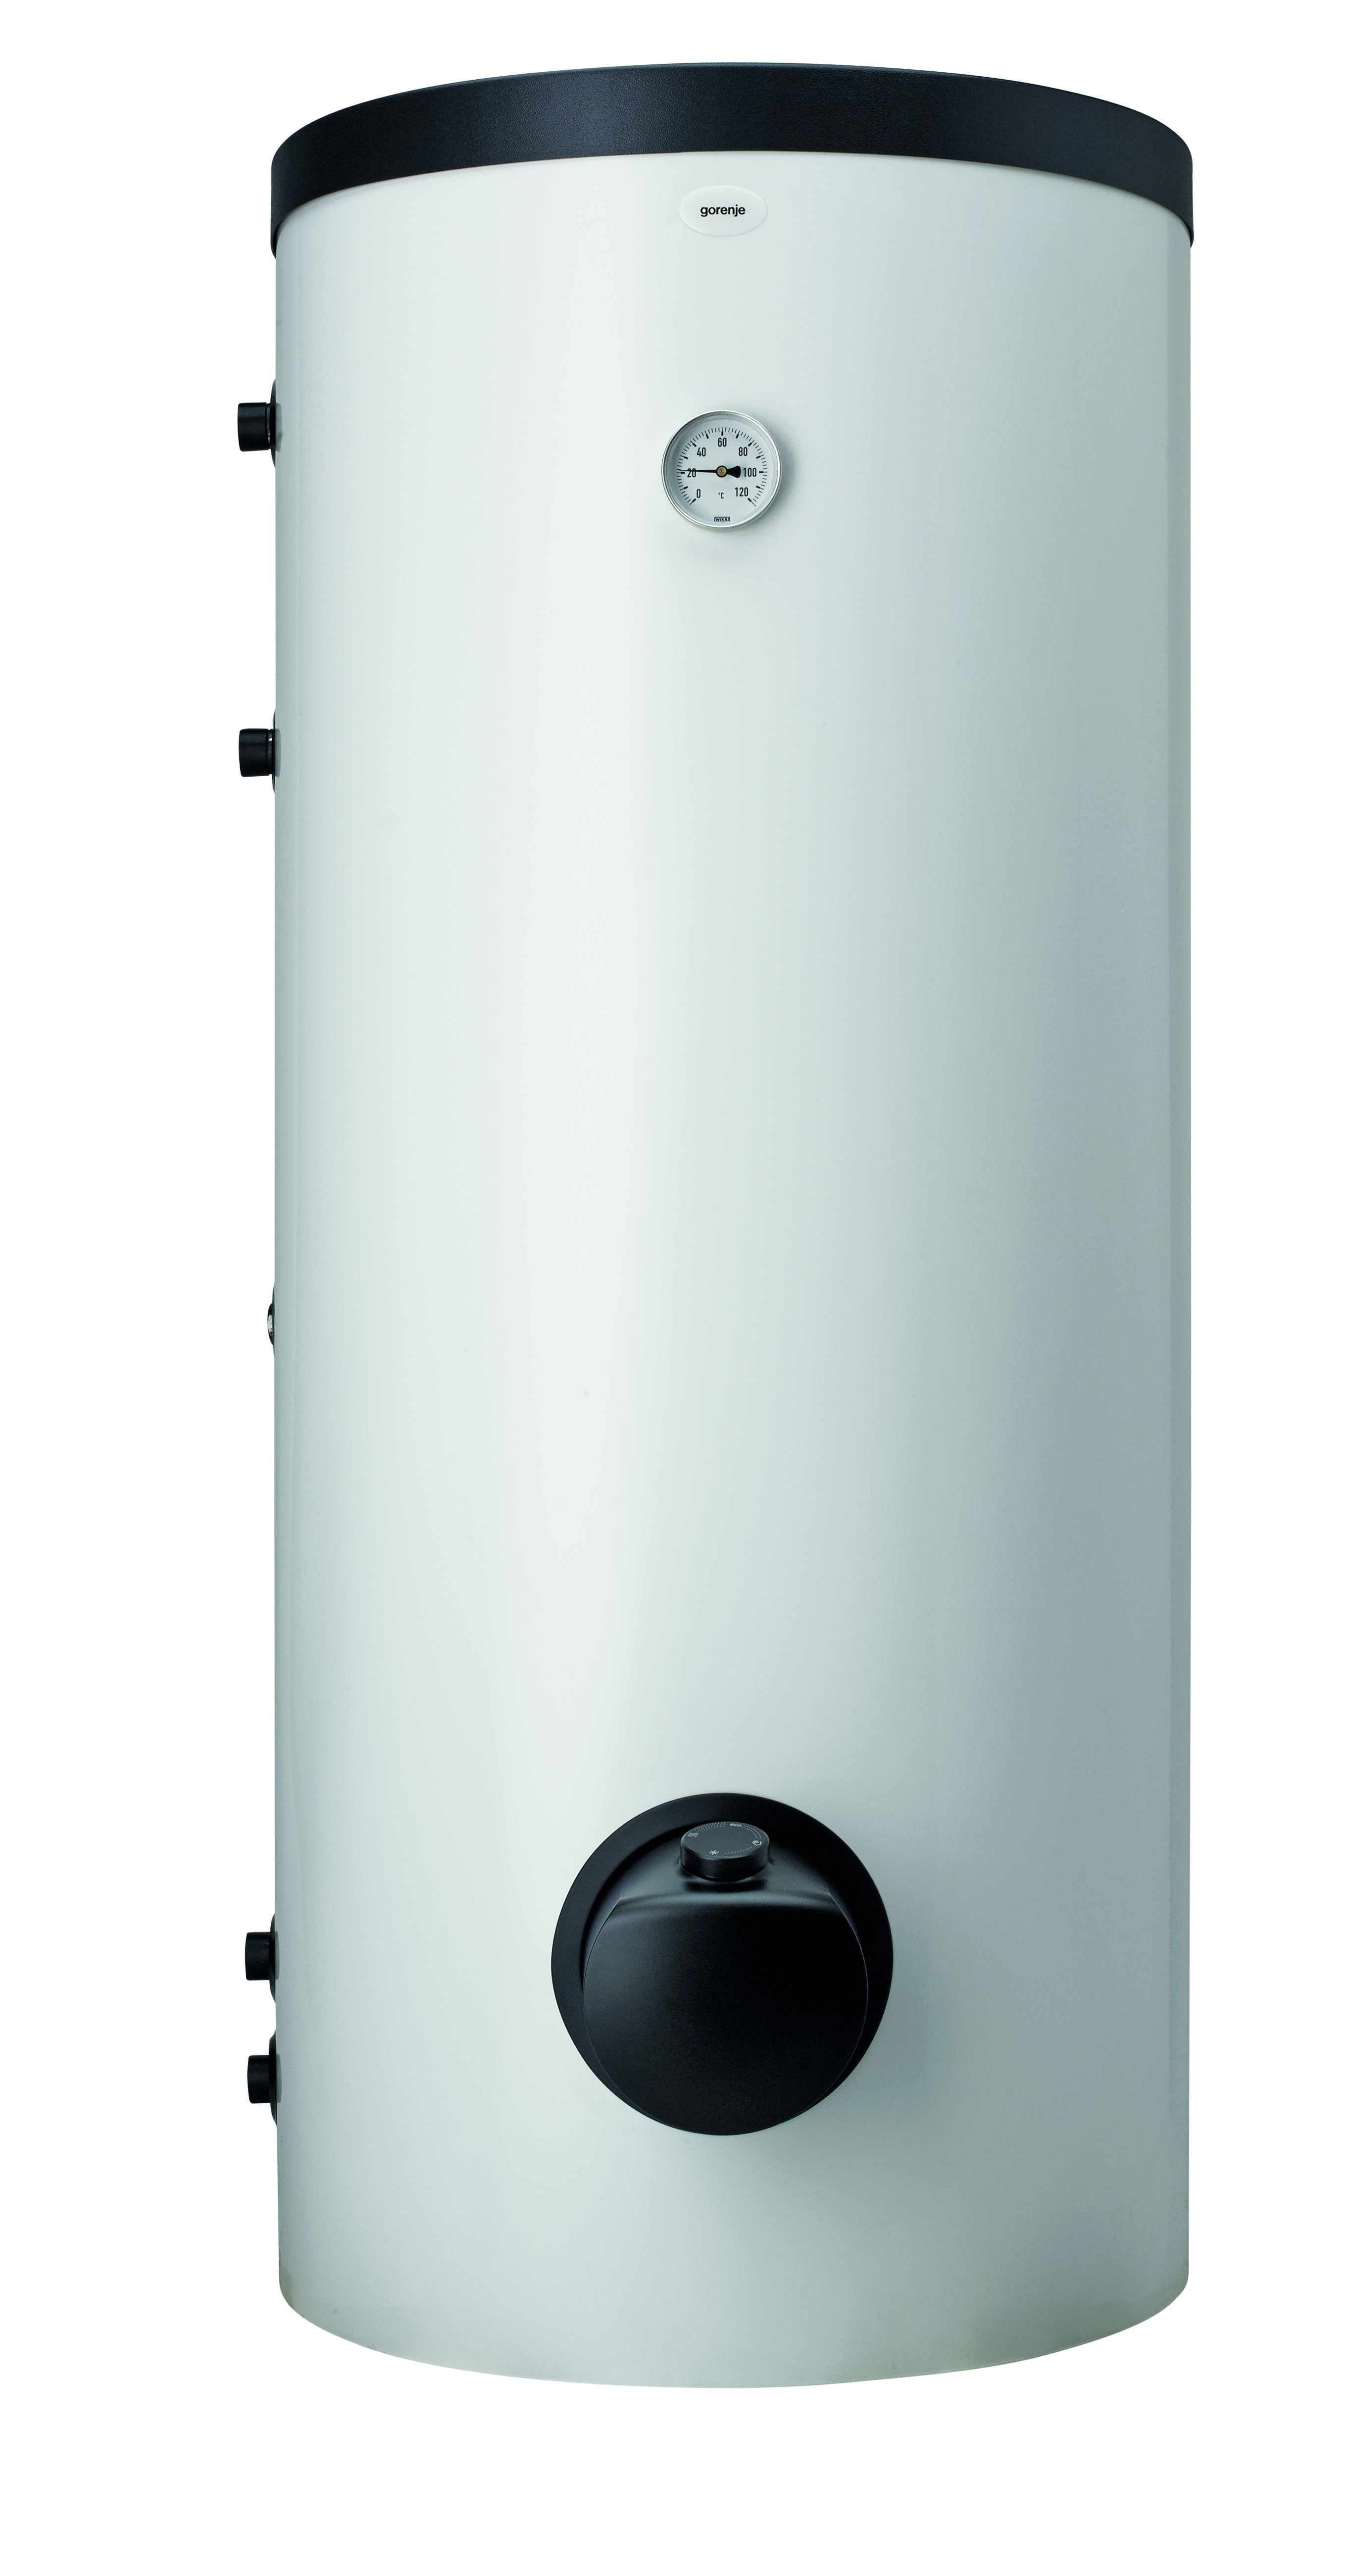 Комбинированный водонагреватель Gorenje VLG200A3-1G3 в интернет-магазине, главное фото